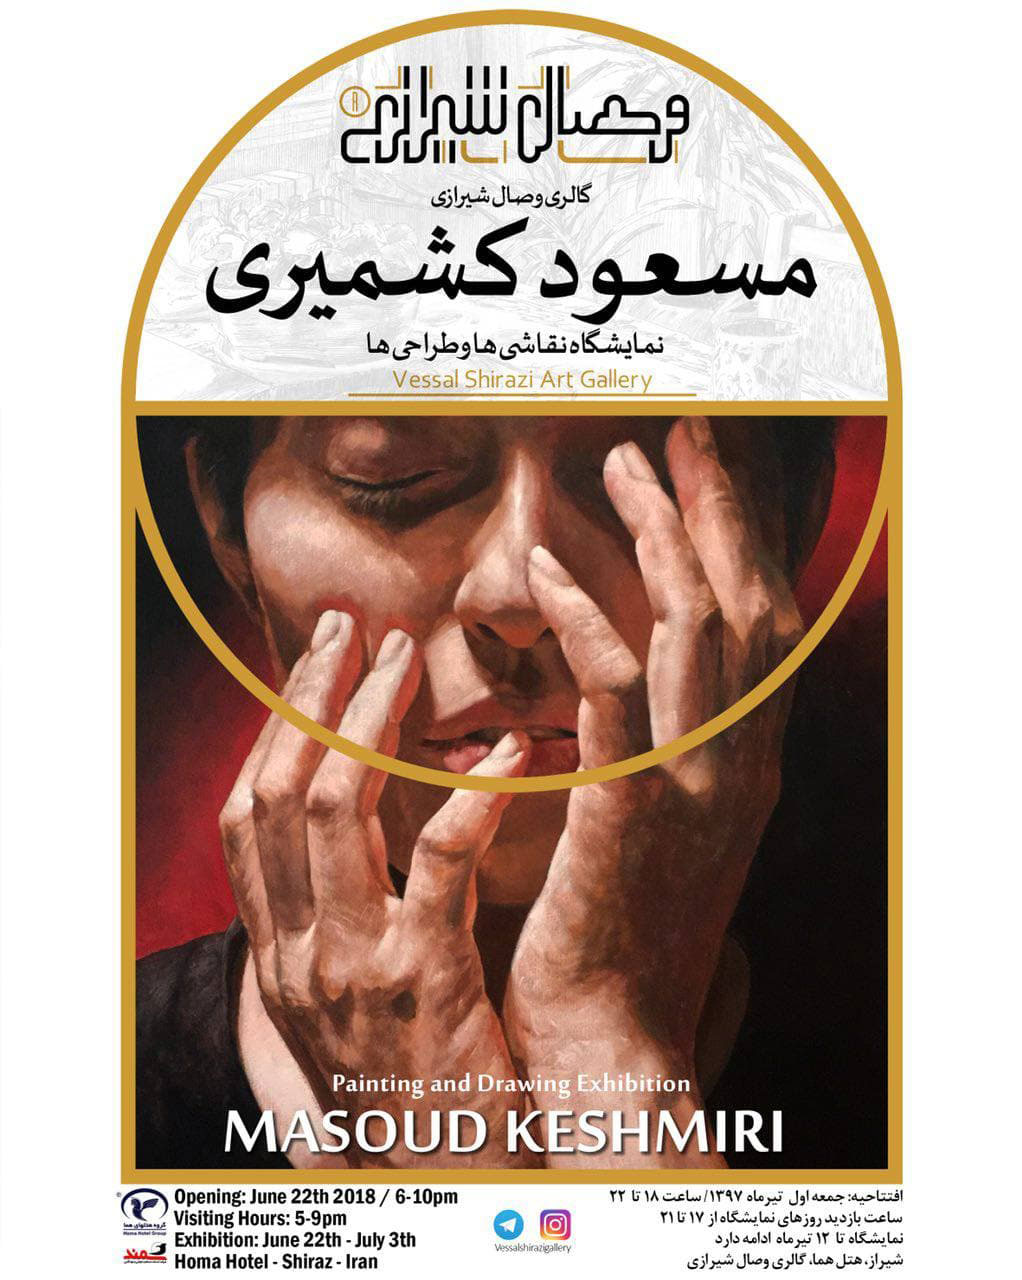 Masoud Keshmiri